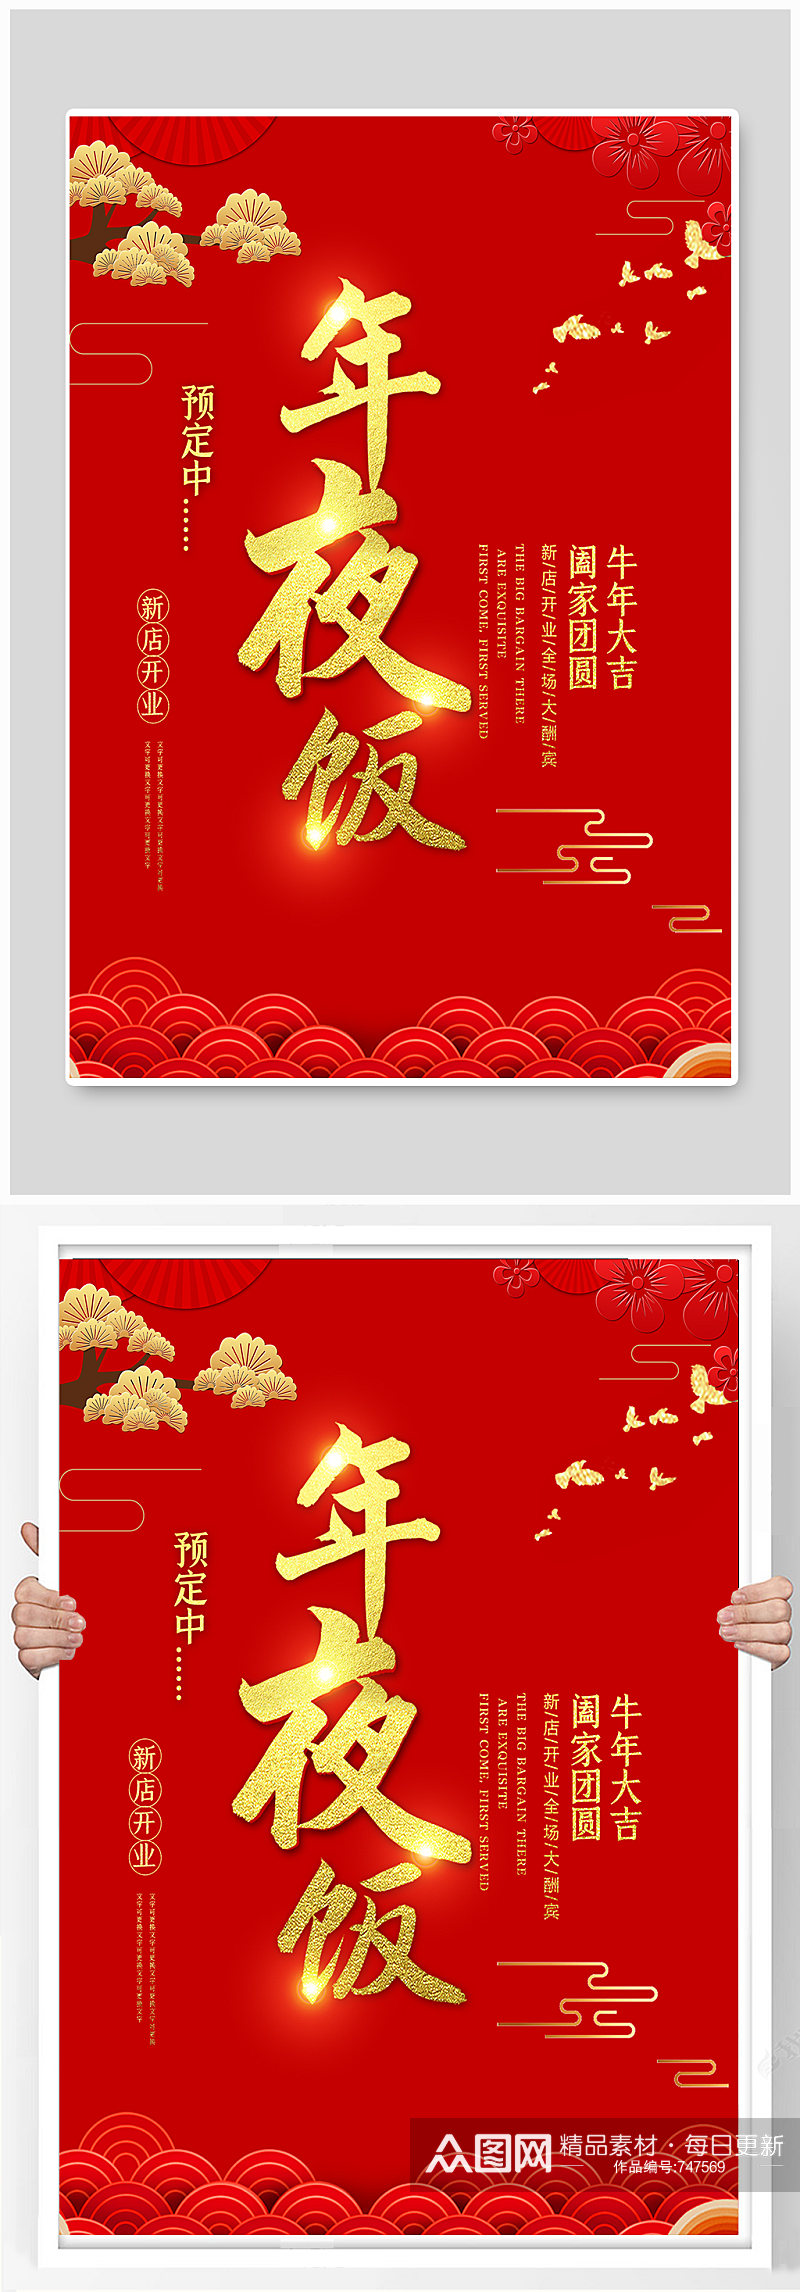 中国风年夜饭预订促销海报素材